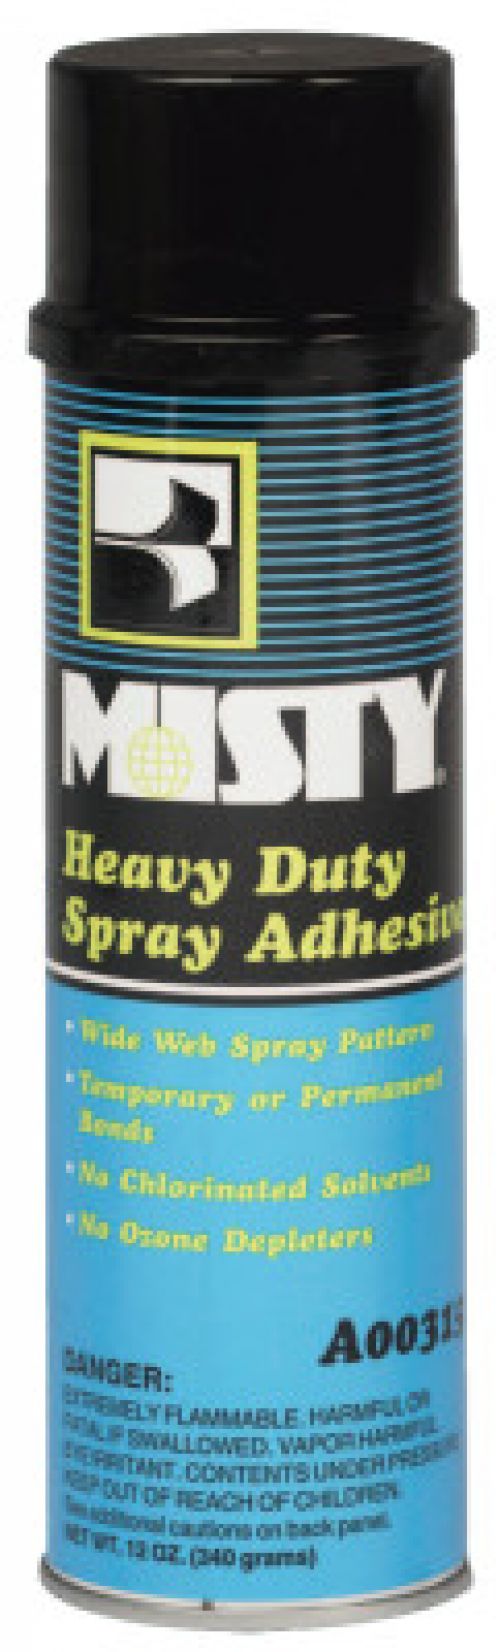 Misty Heavy-Duty Adhesive Spray, 12 oz, Aerosol Can